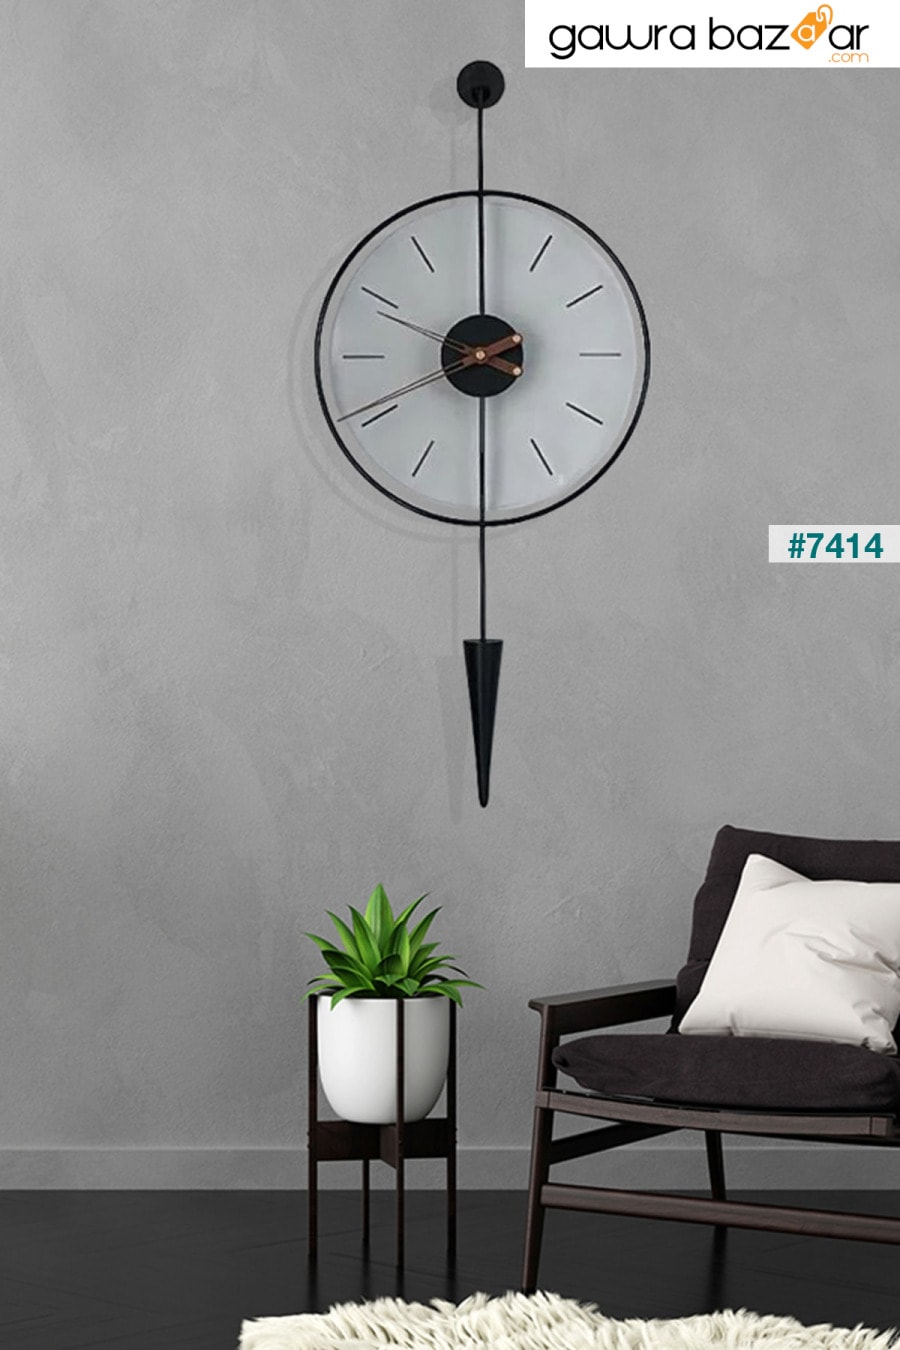 Masippi Glazing أسود ، معدن وزجاج ساعة حائط بتصميم عصري AGA KONSEPT 0